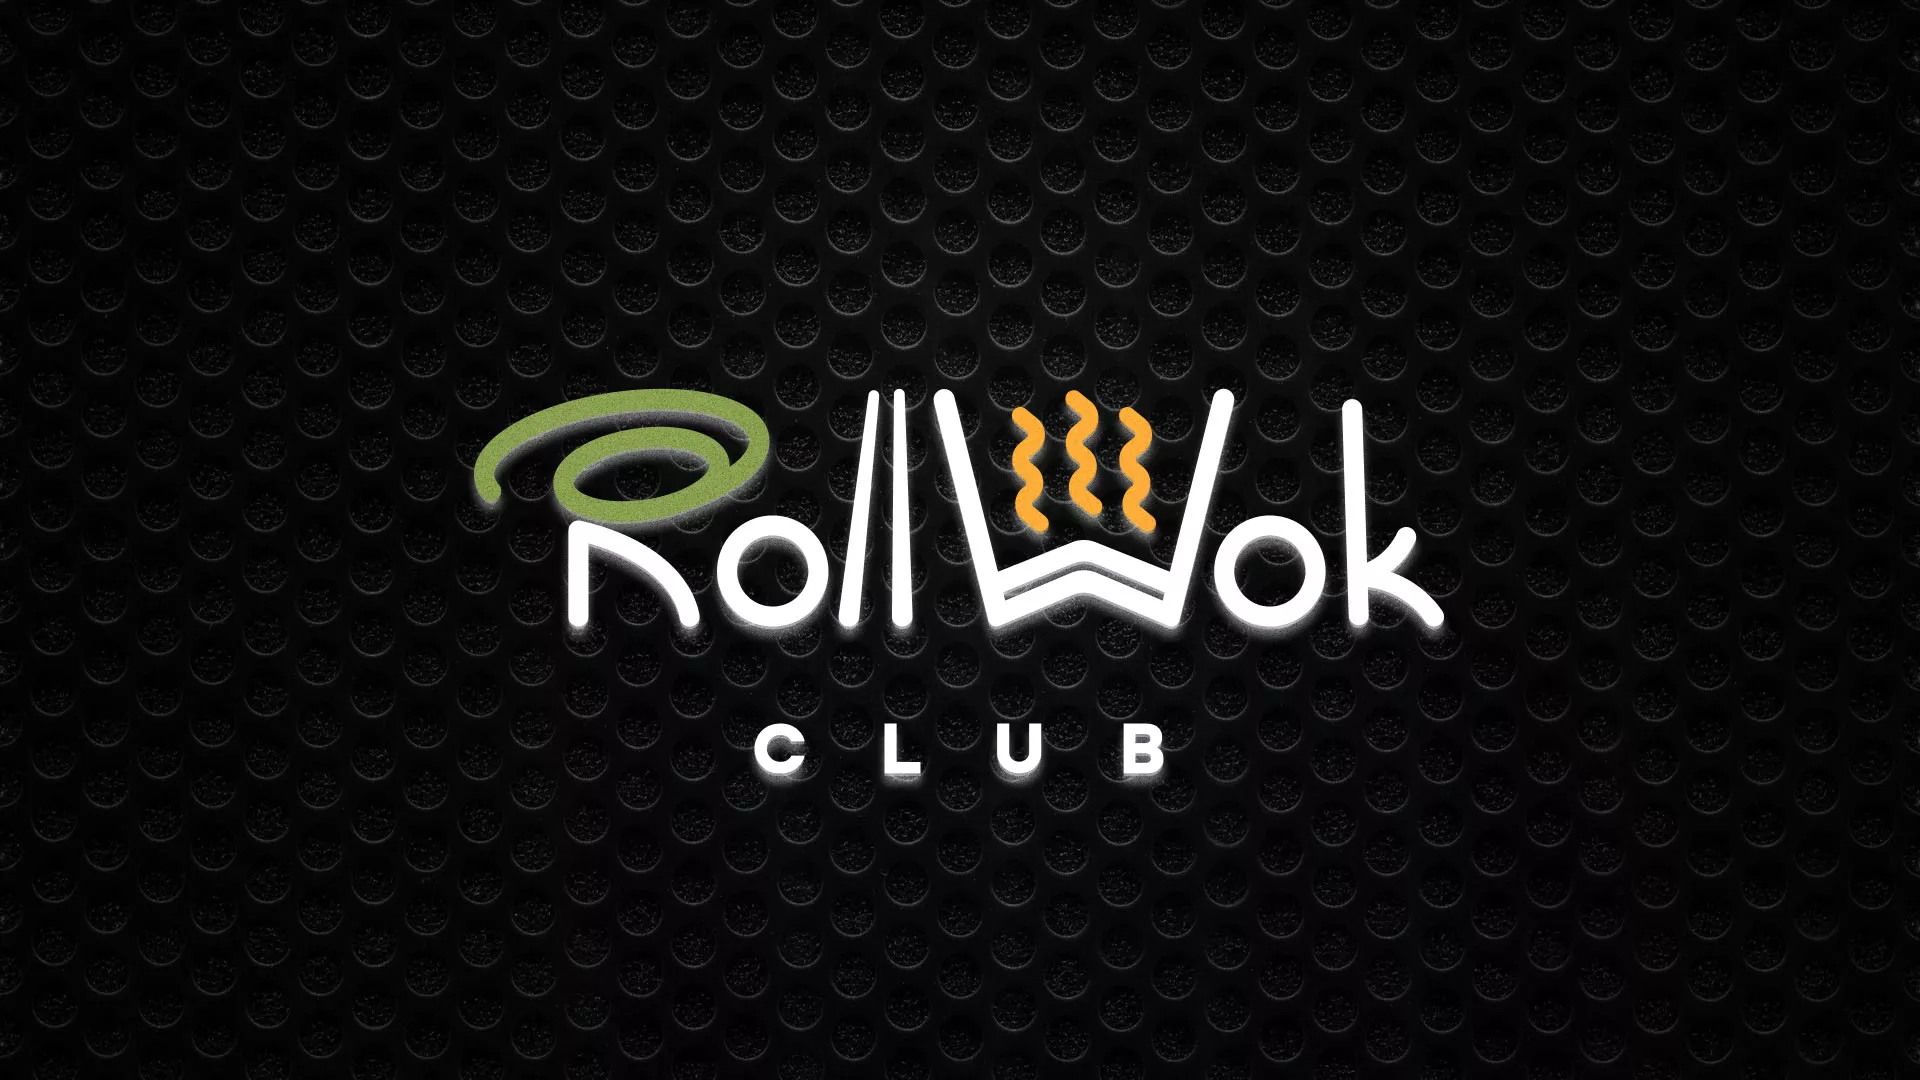 Брендирование торговых точек суши-бара «Roll Wok Club» в Елабуге